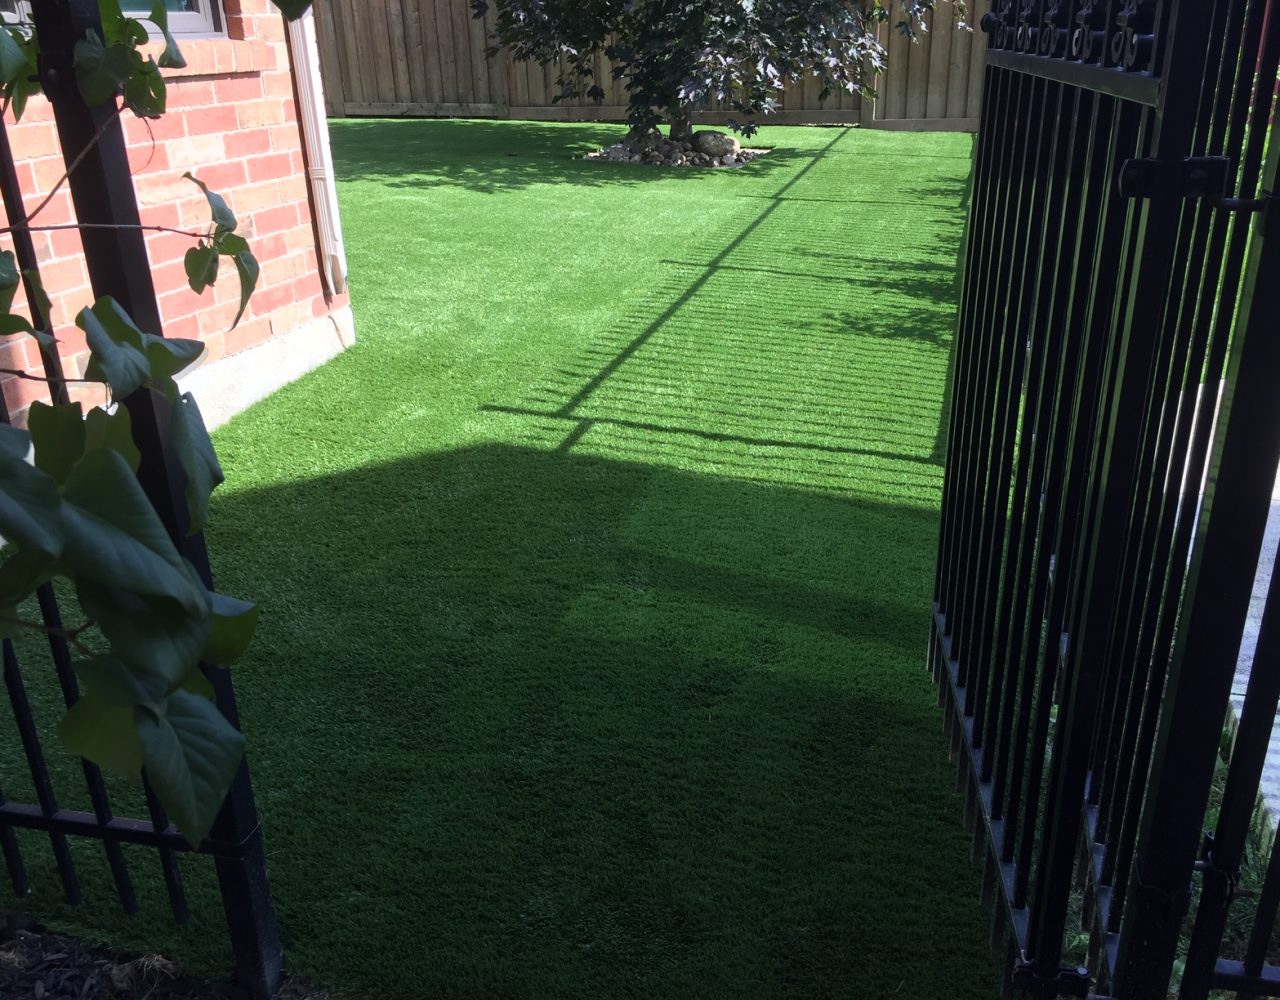 Nice entrance using artificial grass into the backyard